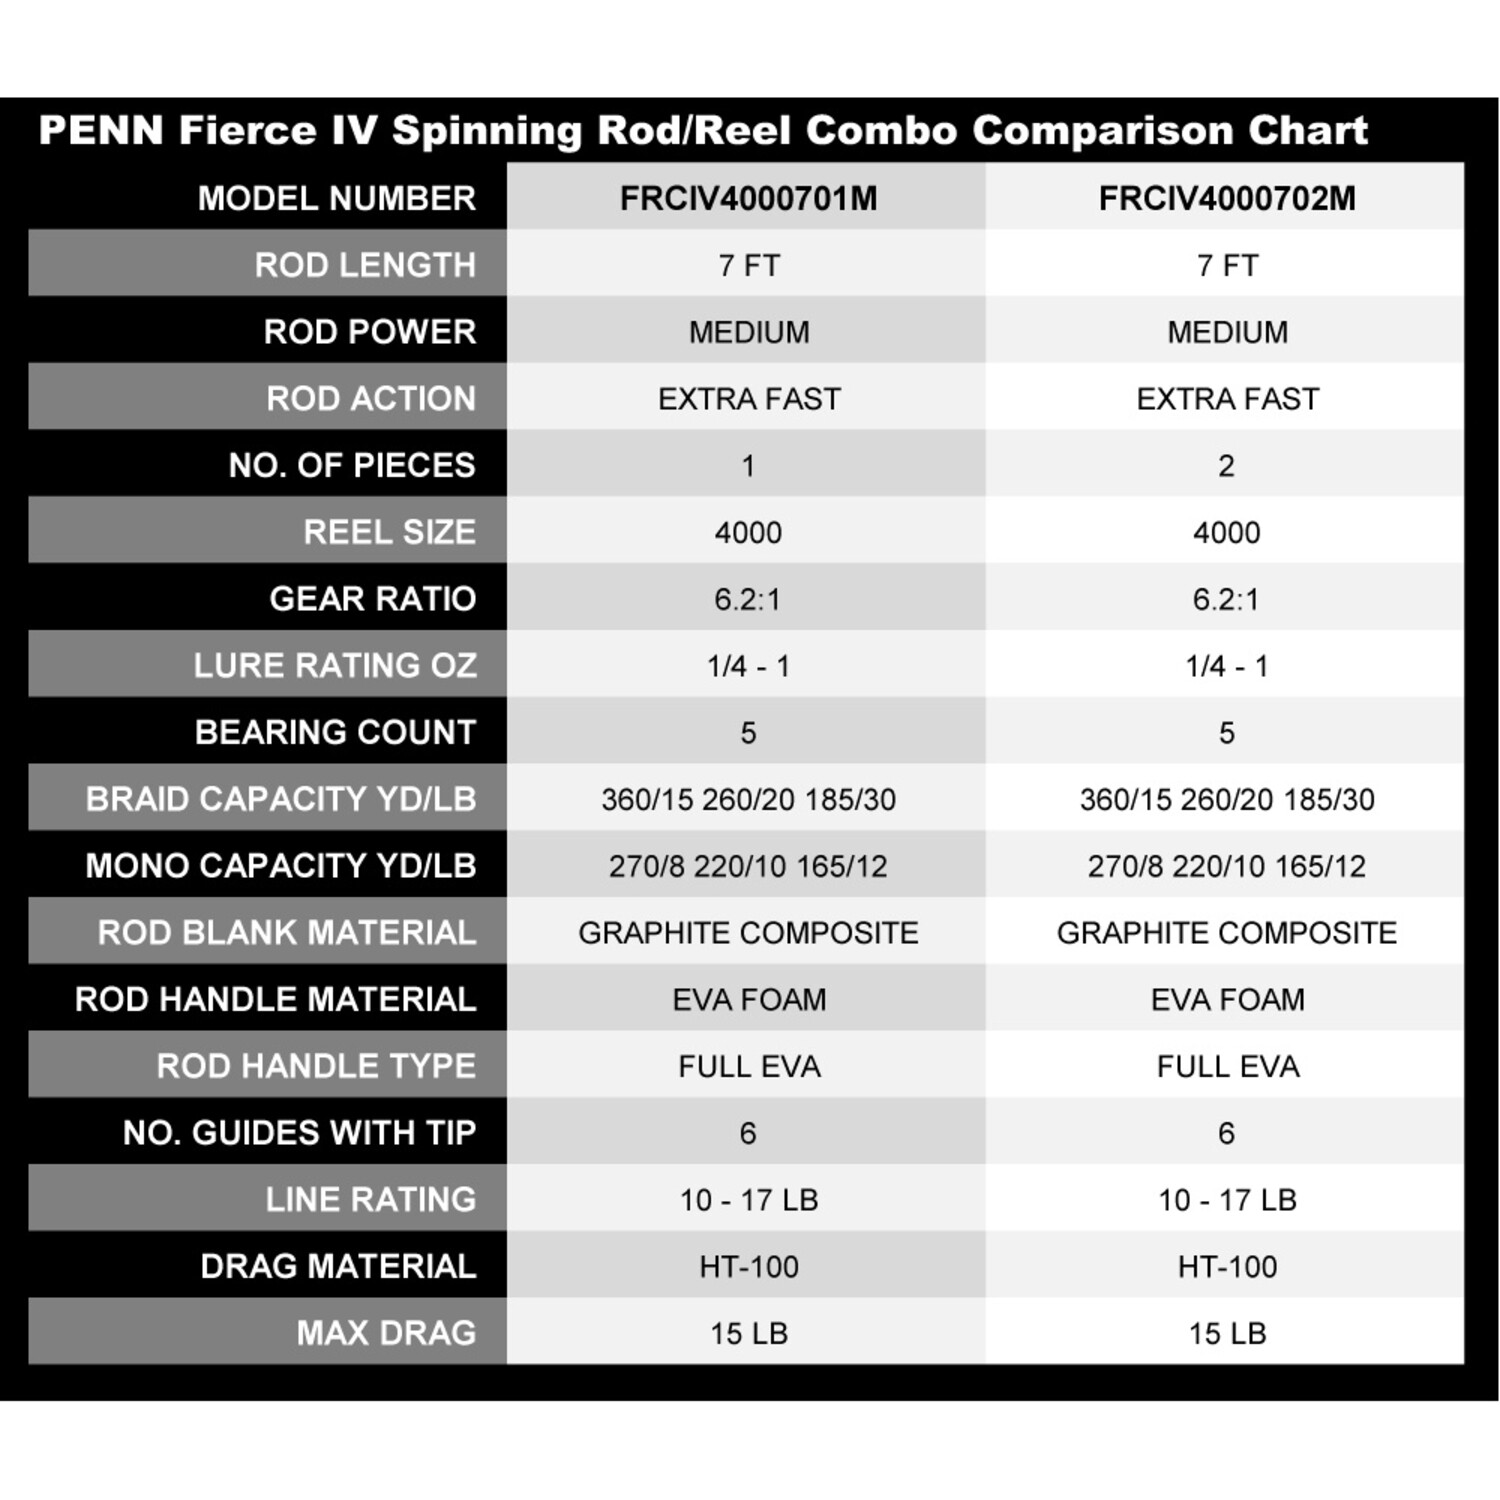 PENN Penn Fierce IV Spinning Rod/Reel Combo